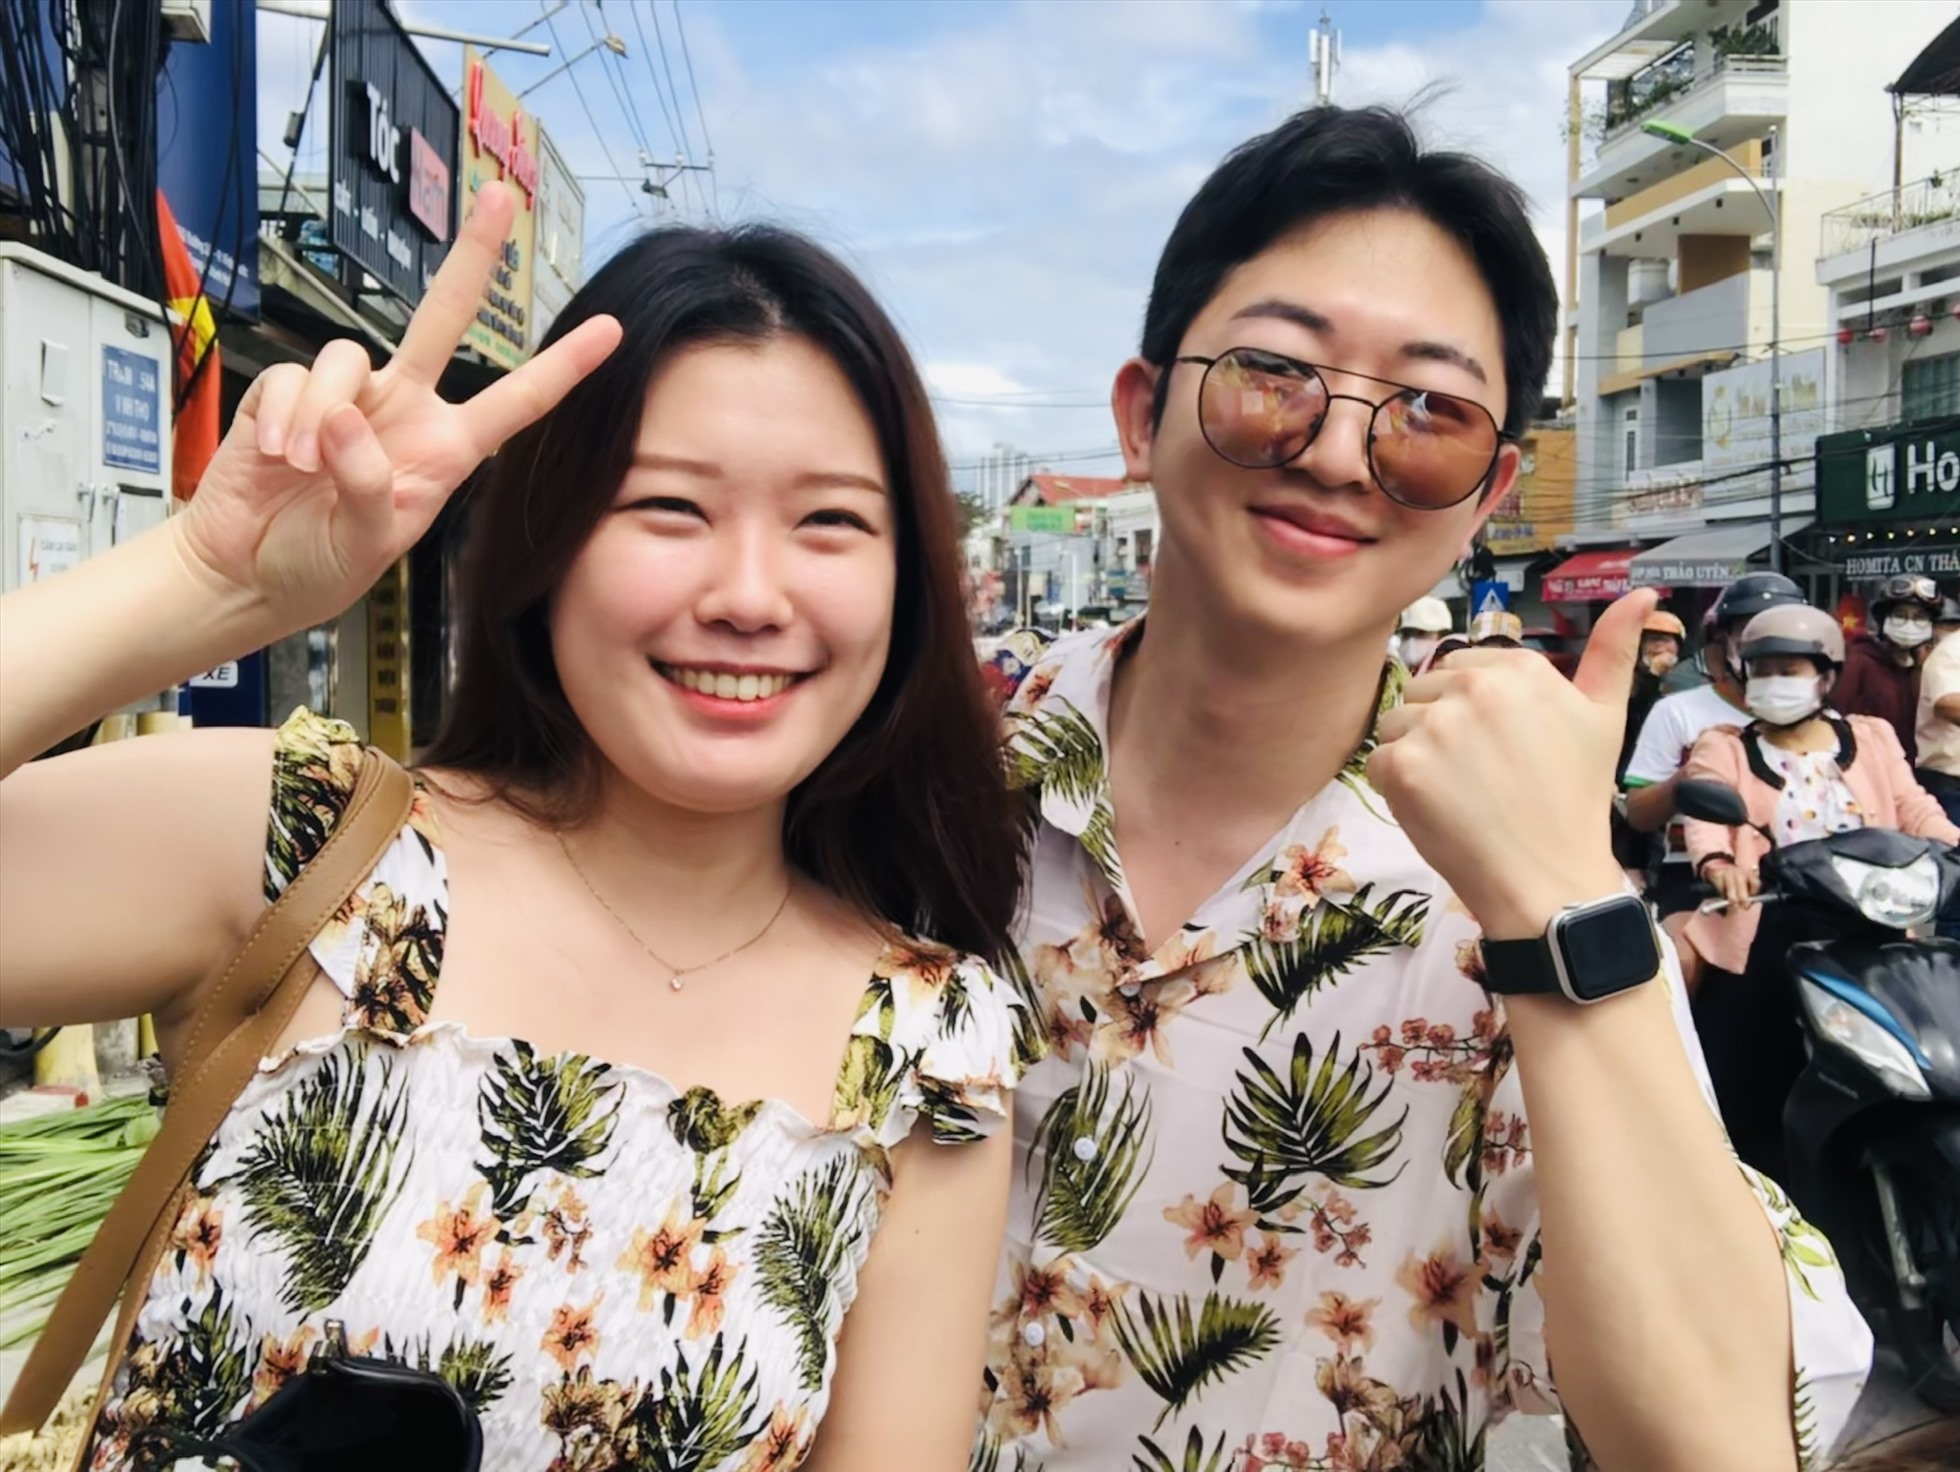 Nhiều du khách nước ngoài cũng xuất hiện ngay ngày đầu năm mới tại các điểm đến, đường phố của Nha Trang- Khánh Hòa. Đây là tín hiệu sáng kỳ vọng sự phục hồi của khách du lịch quốc tế đến Khánh Hòa trong năm Quý Mão.